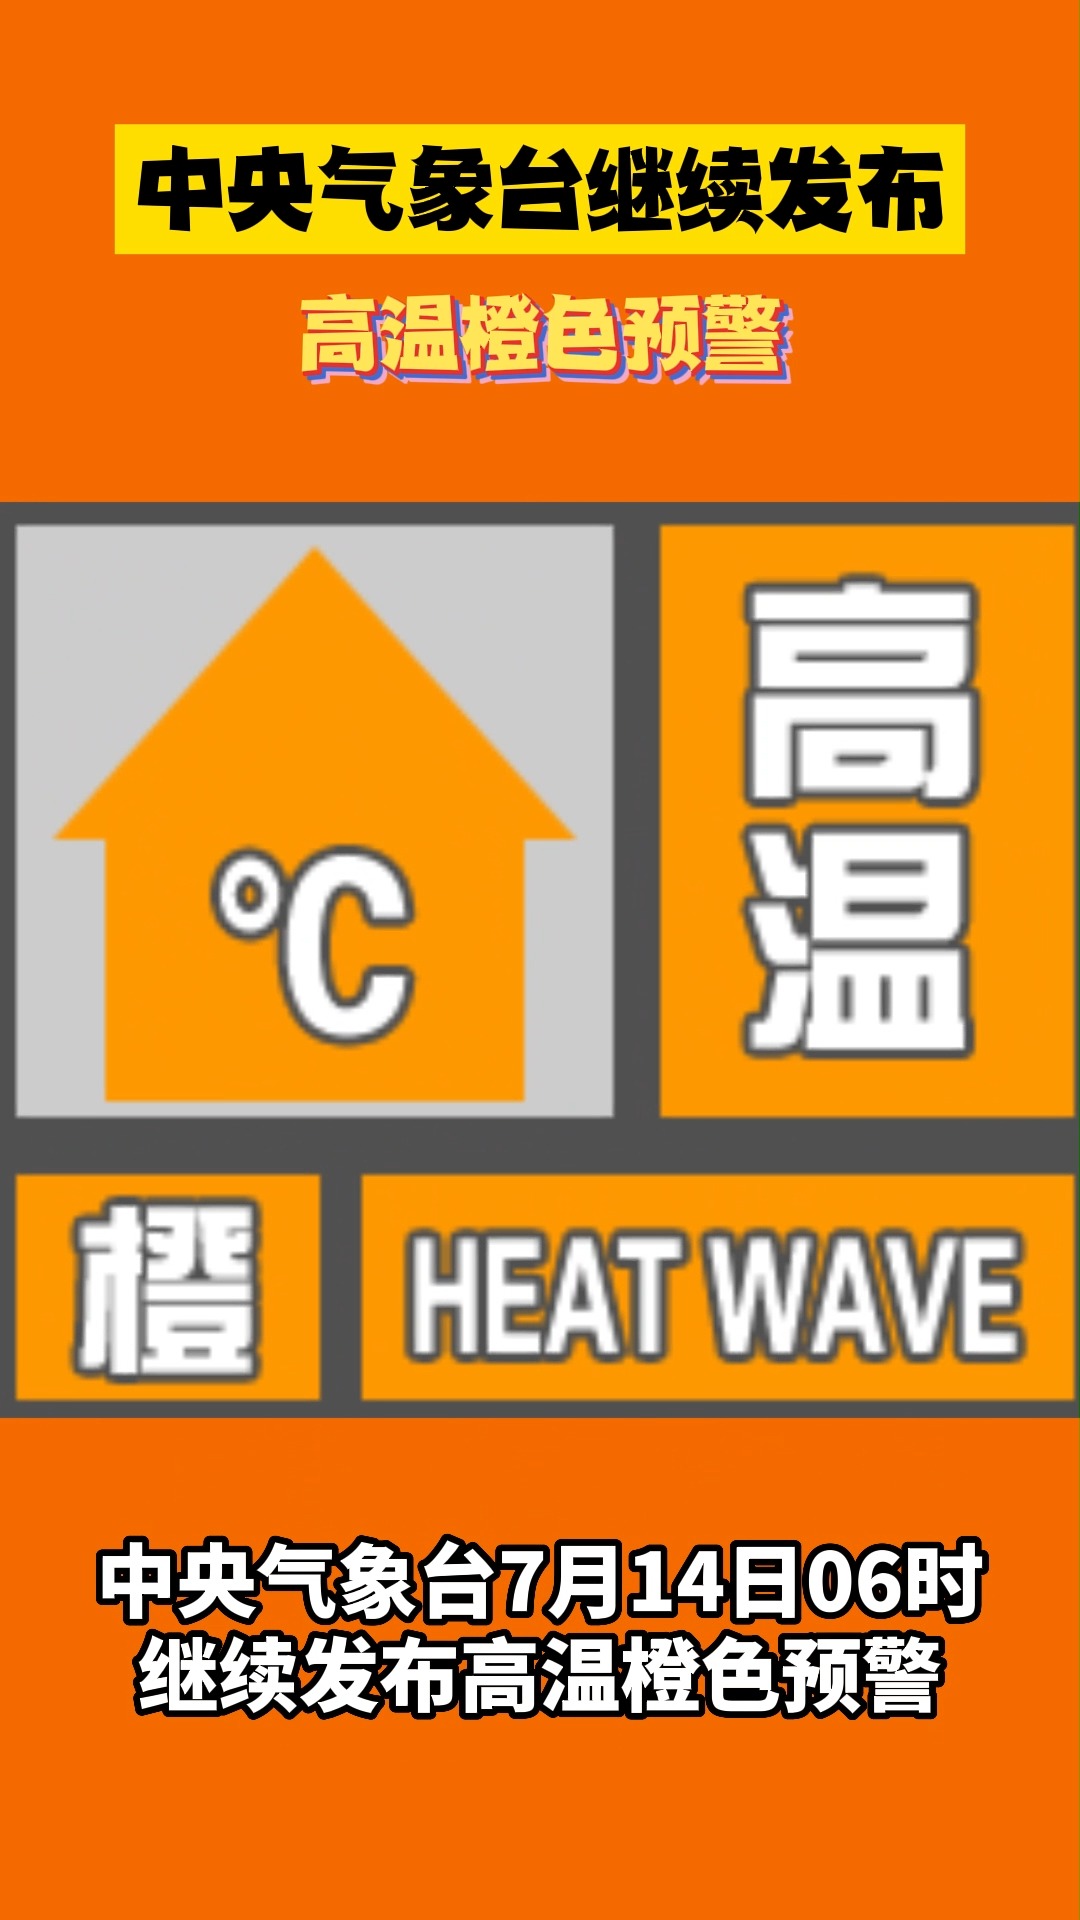 中央气象台继续发布高温橙色预警